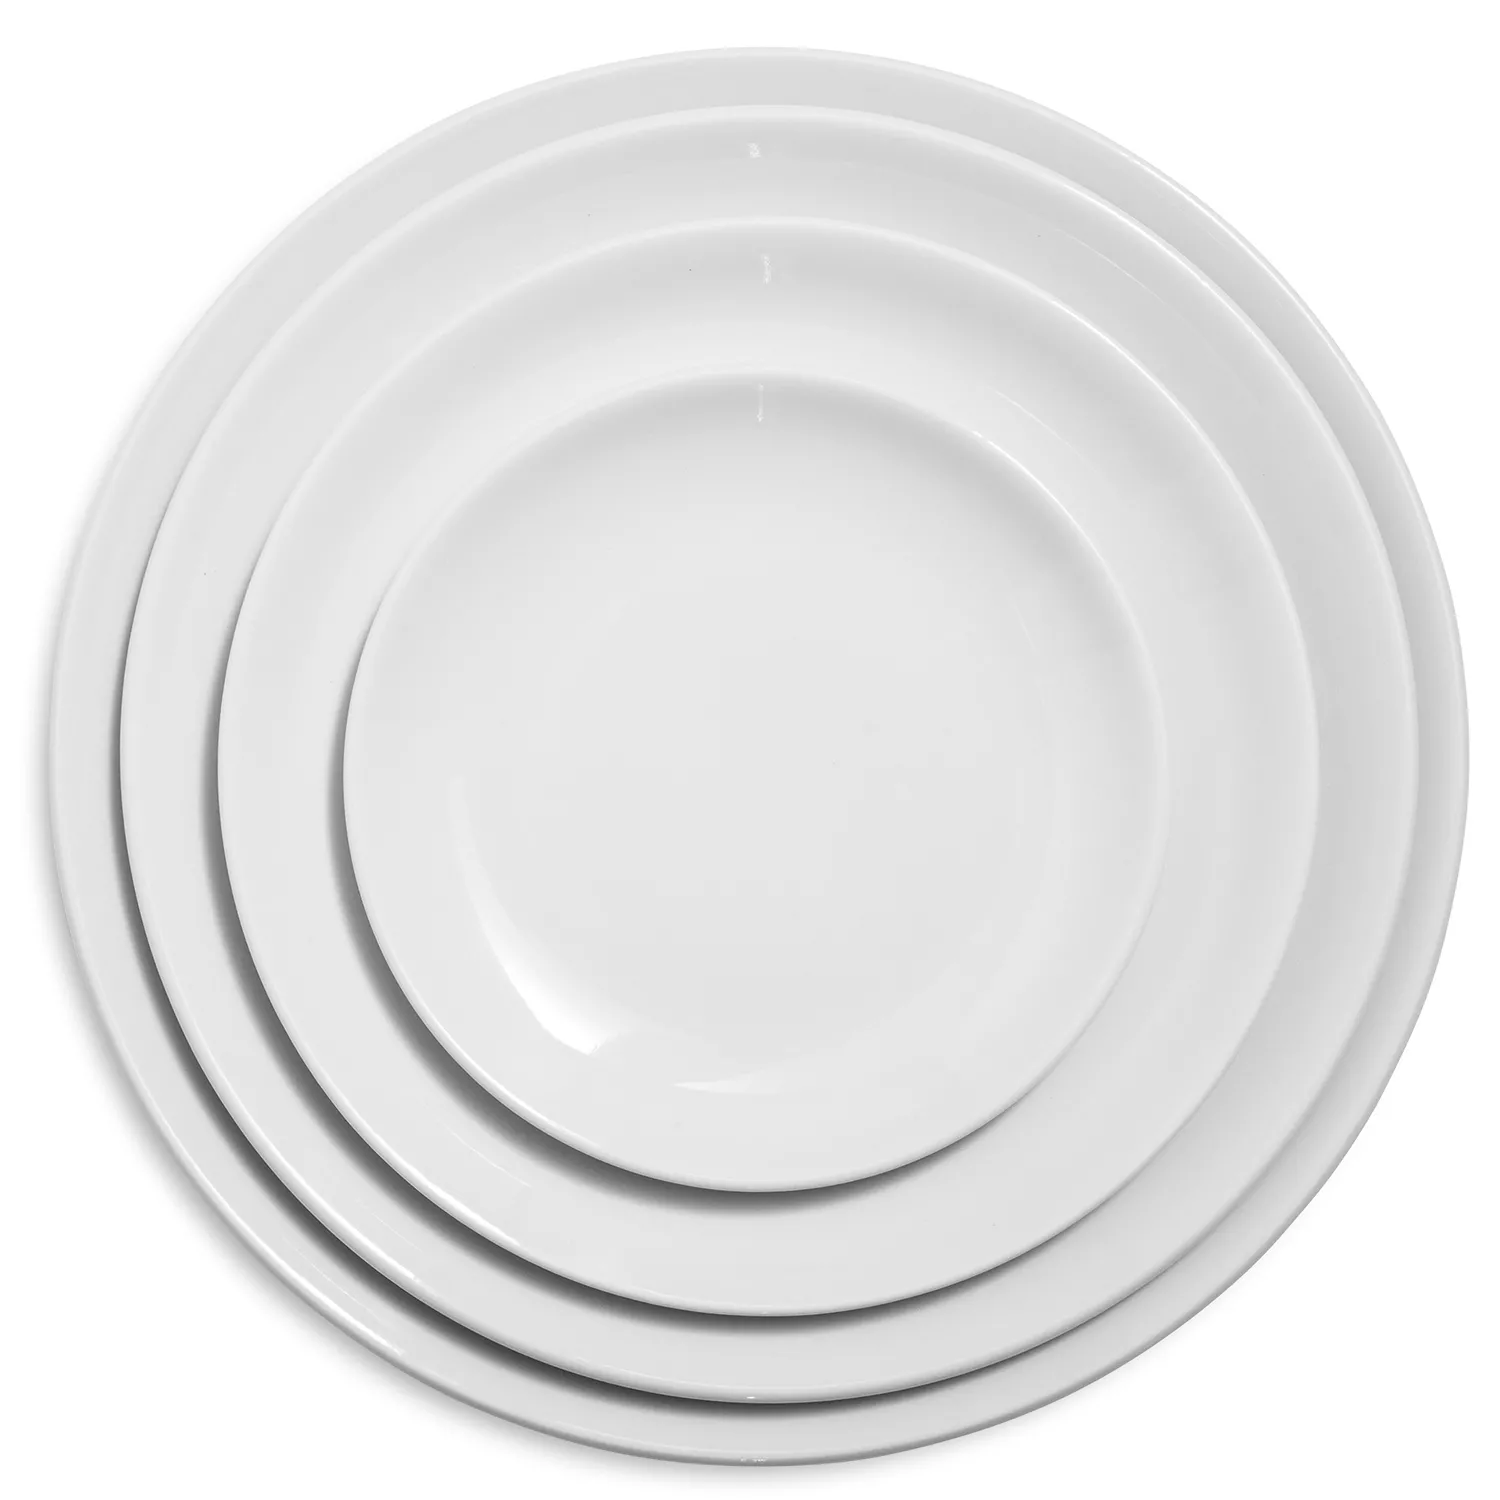 Sur La Table Coupe Porcelain Appetizer Plate